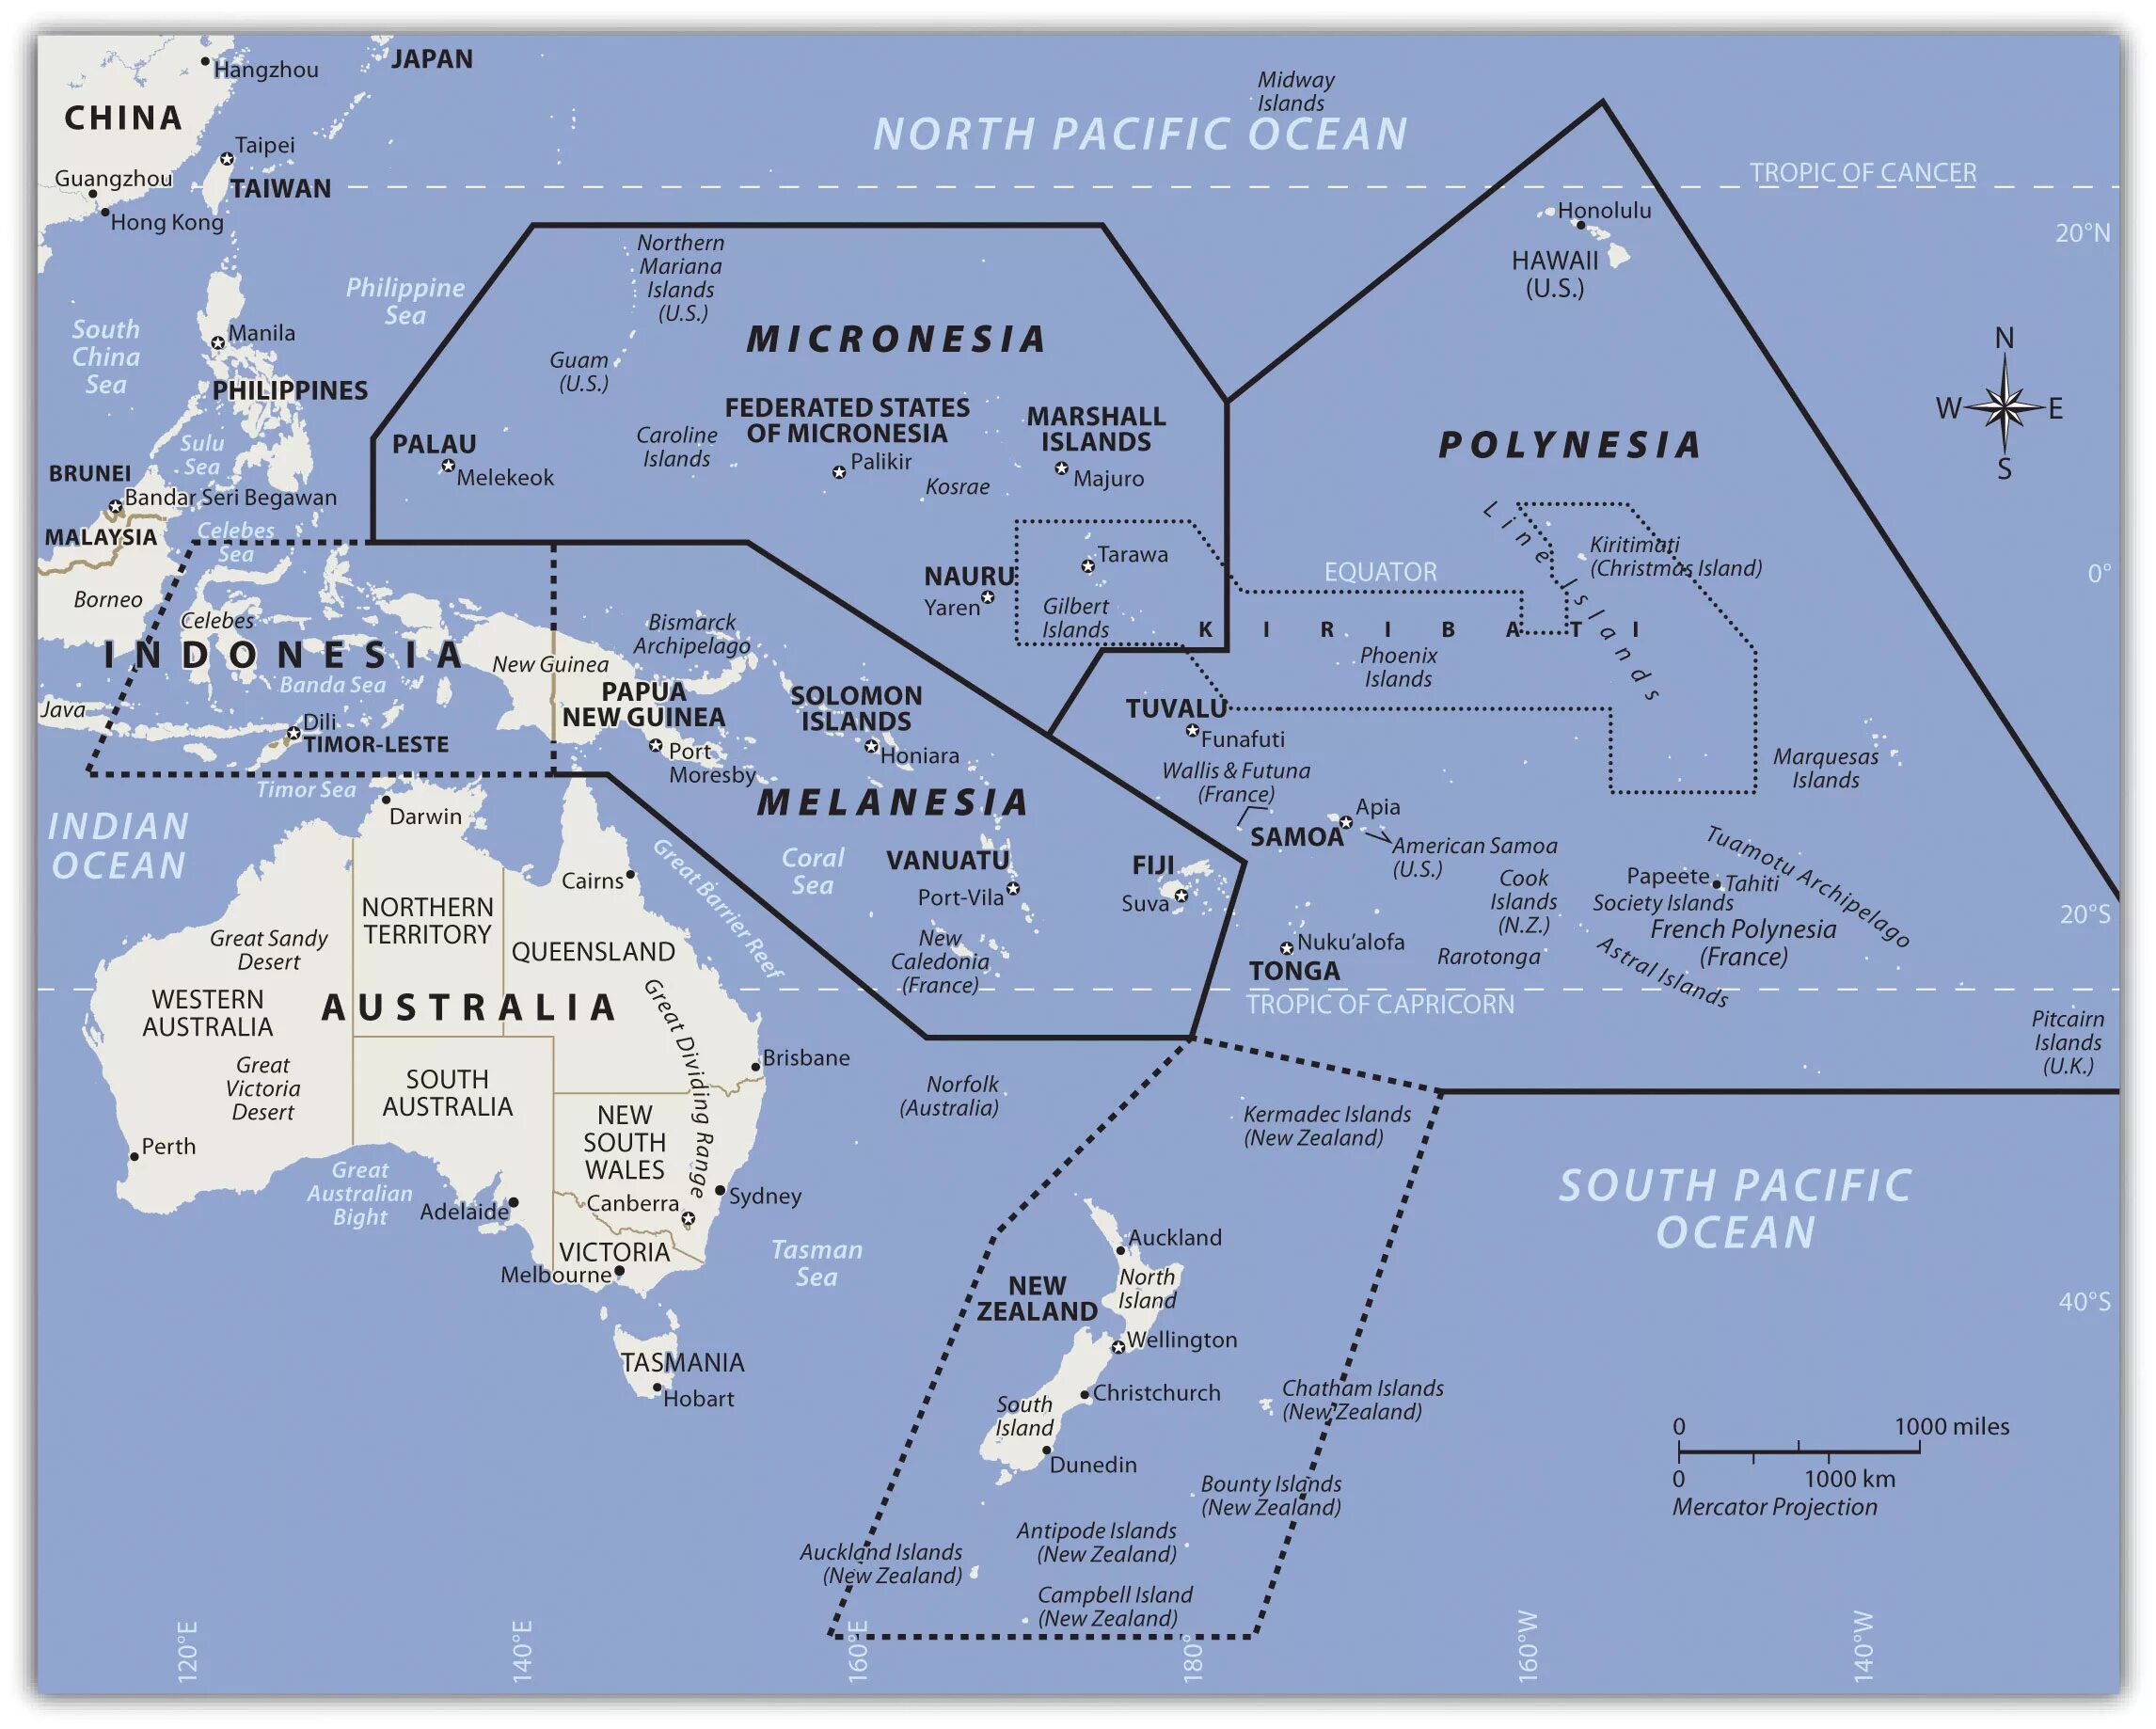 План океании. Австралия Меланезия Полинезия Микронезия. Государства Океании Меланезия. Карта Океании Меланезия Полинезия Микронезия. Границы Океании (Меланезия, Микронезия, Полинезия).